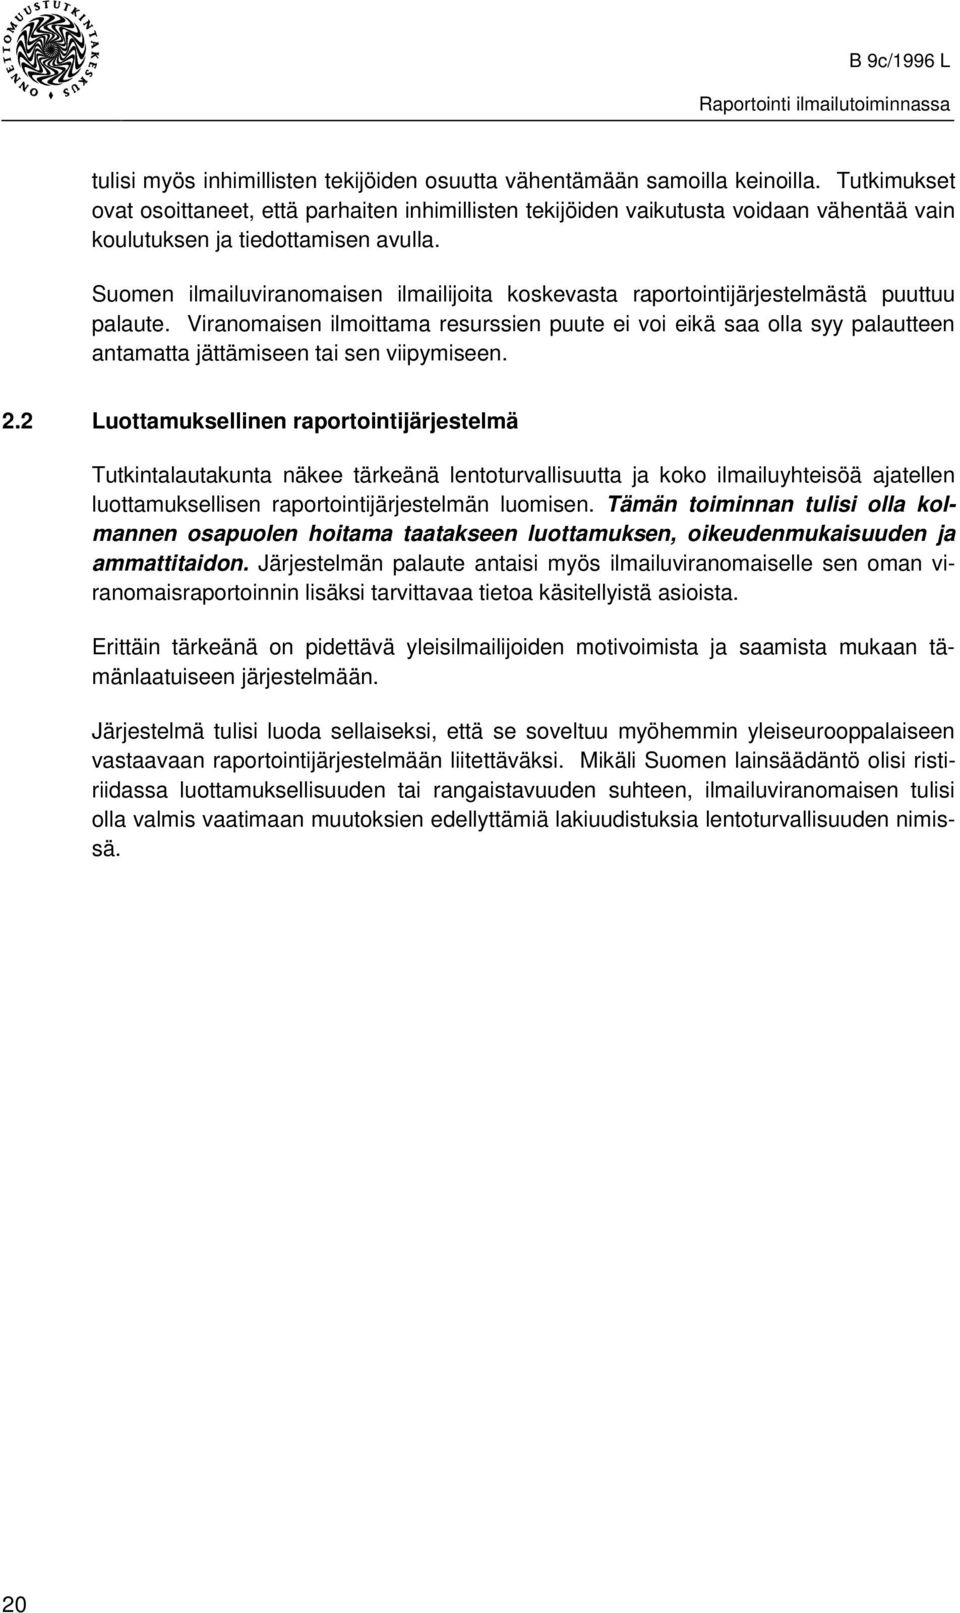 Suomen ilmailuviranomaisen ilmailijoita koskevasta raportointijärjestelmästä puuttuu palaute.